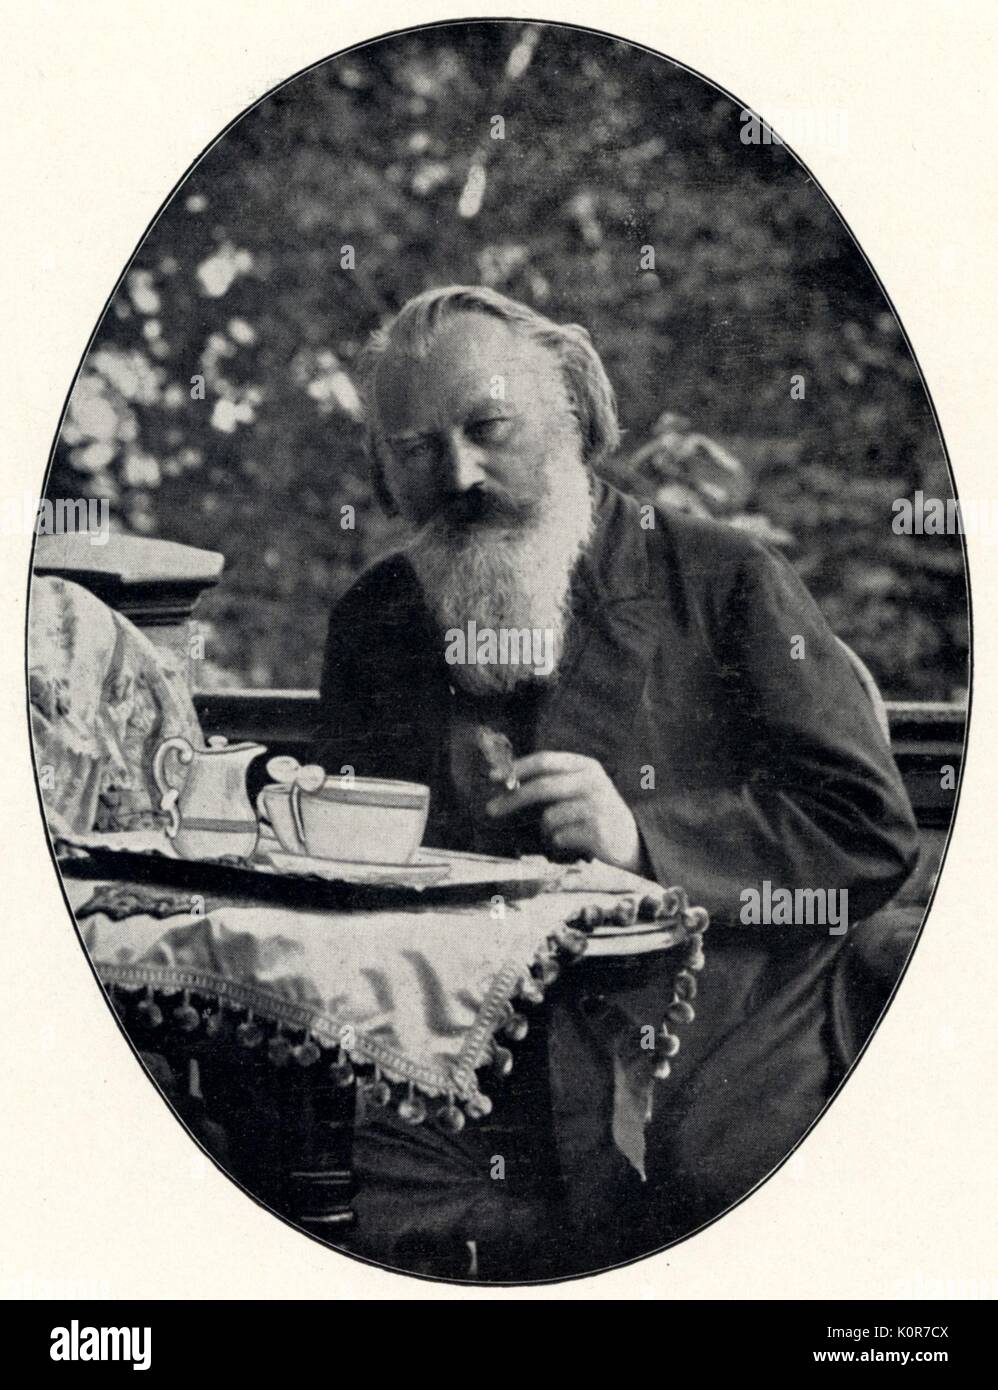 Johannes Brahms an der Johann Strauss' in Bad Ischl. Deutschen Komponisten (1833-1897). Stockfoto